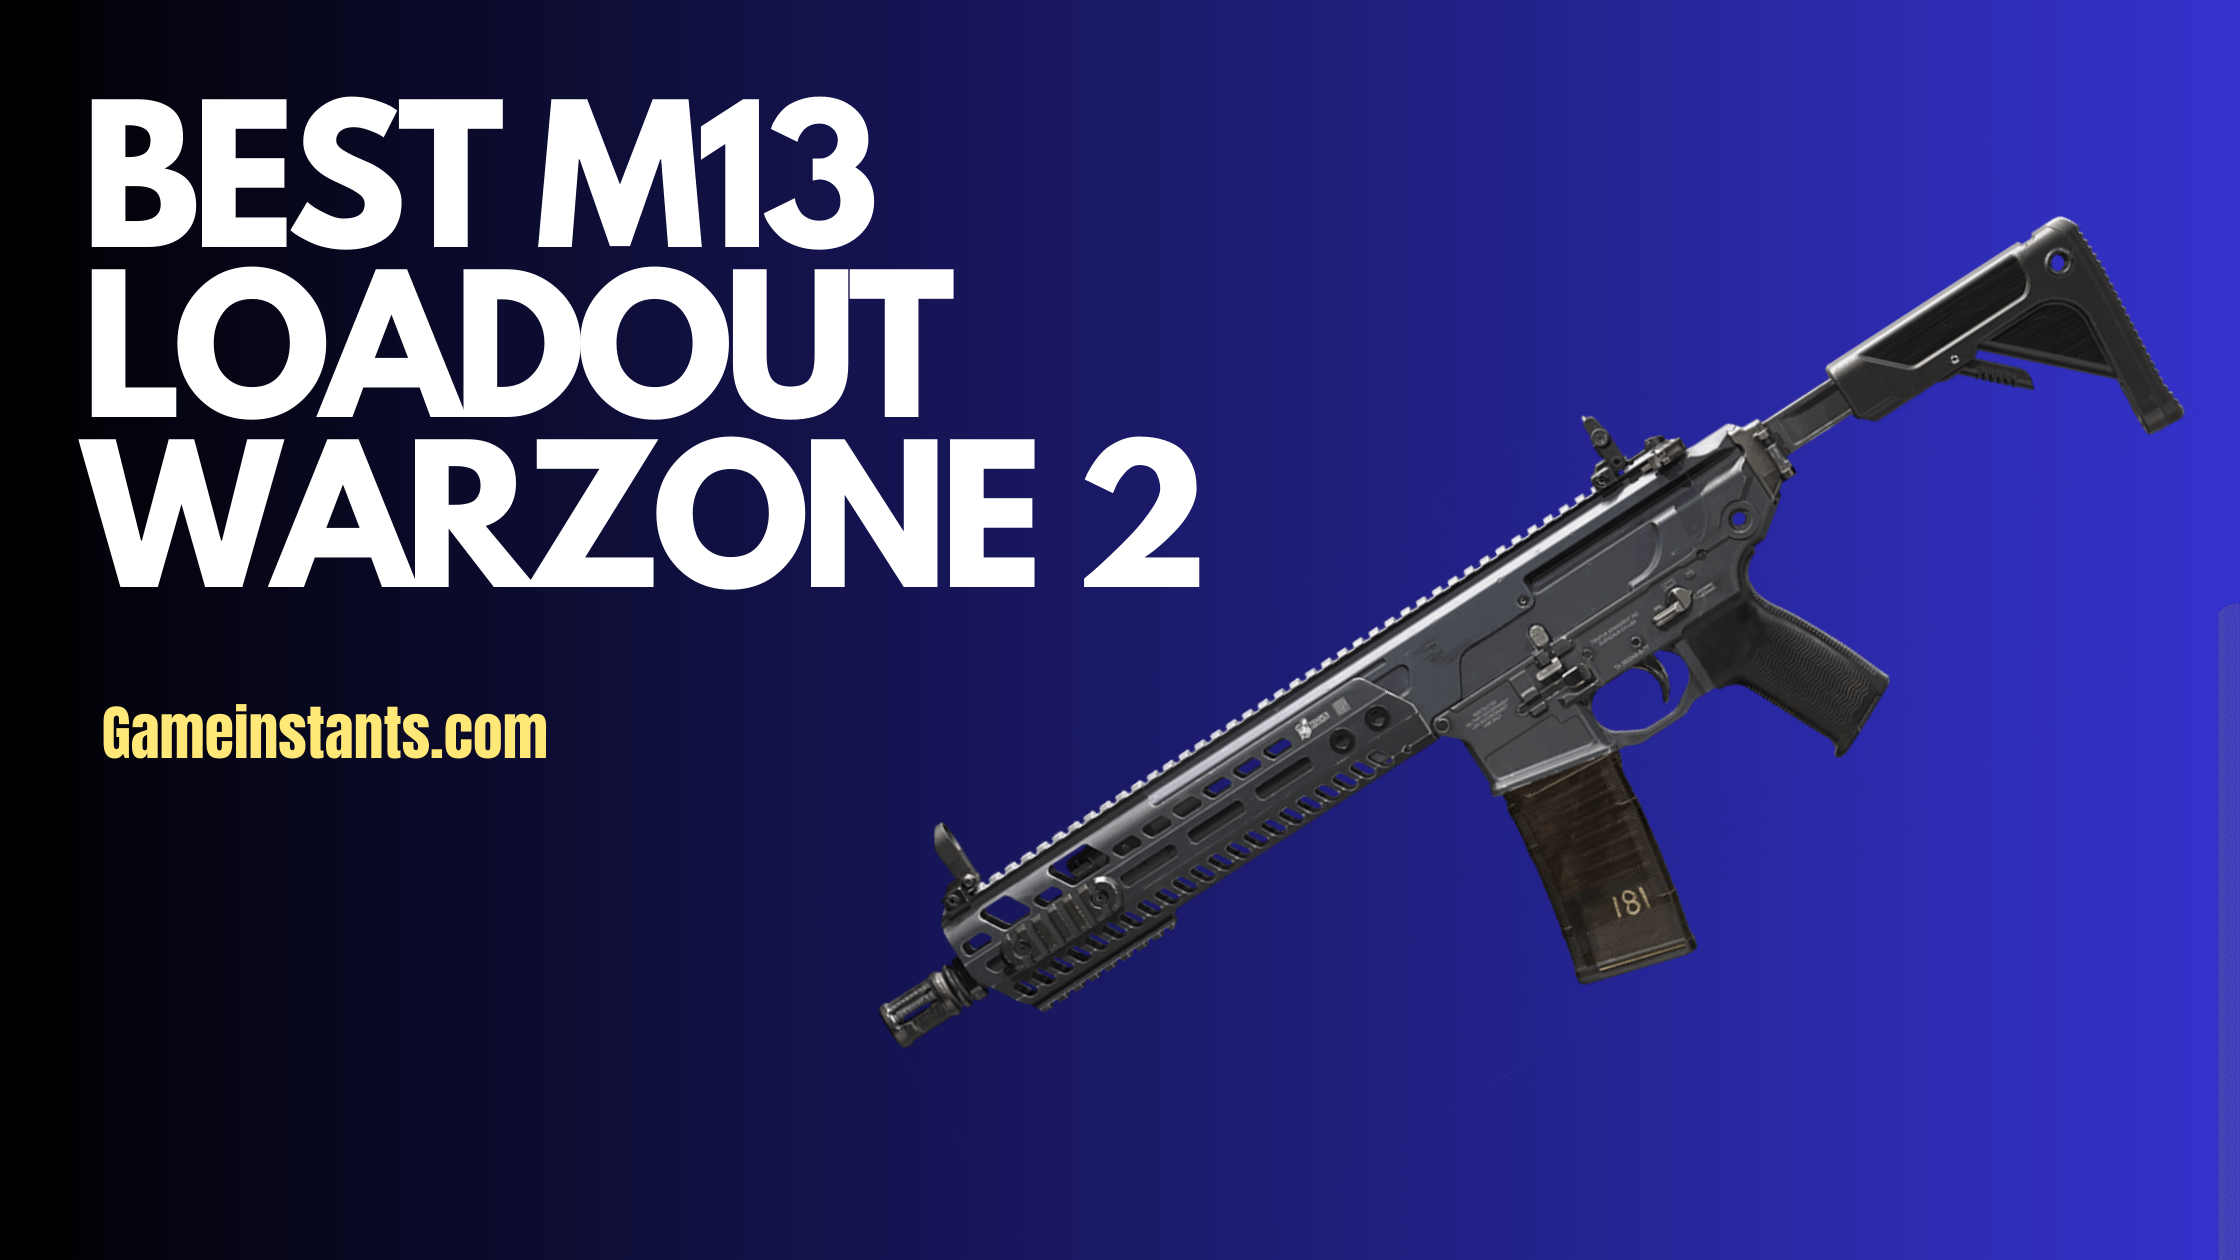 Best M13 Loadout Warzone 2